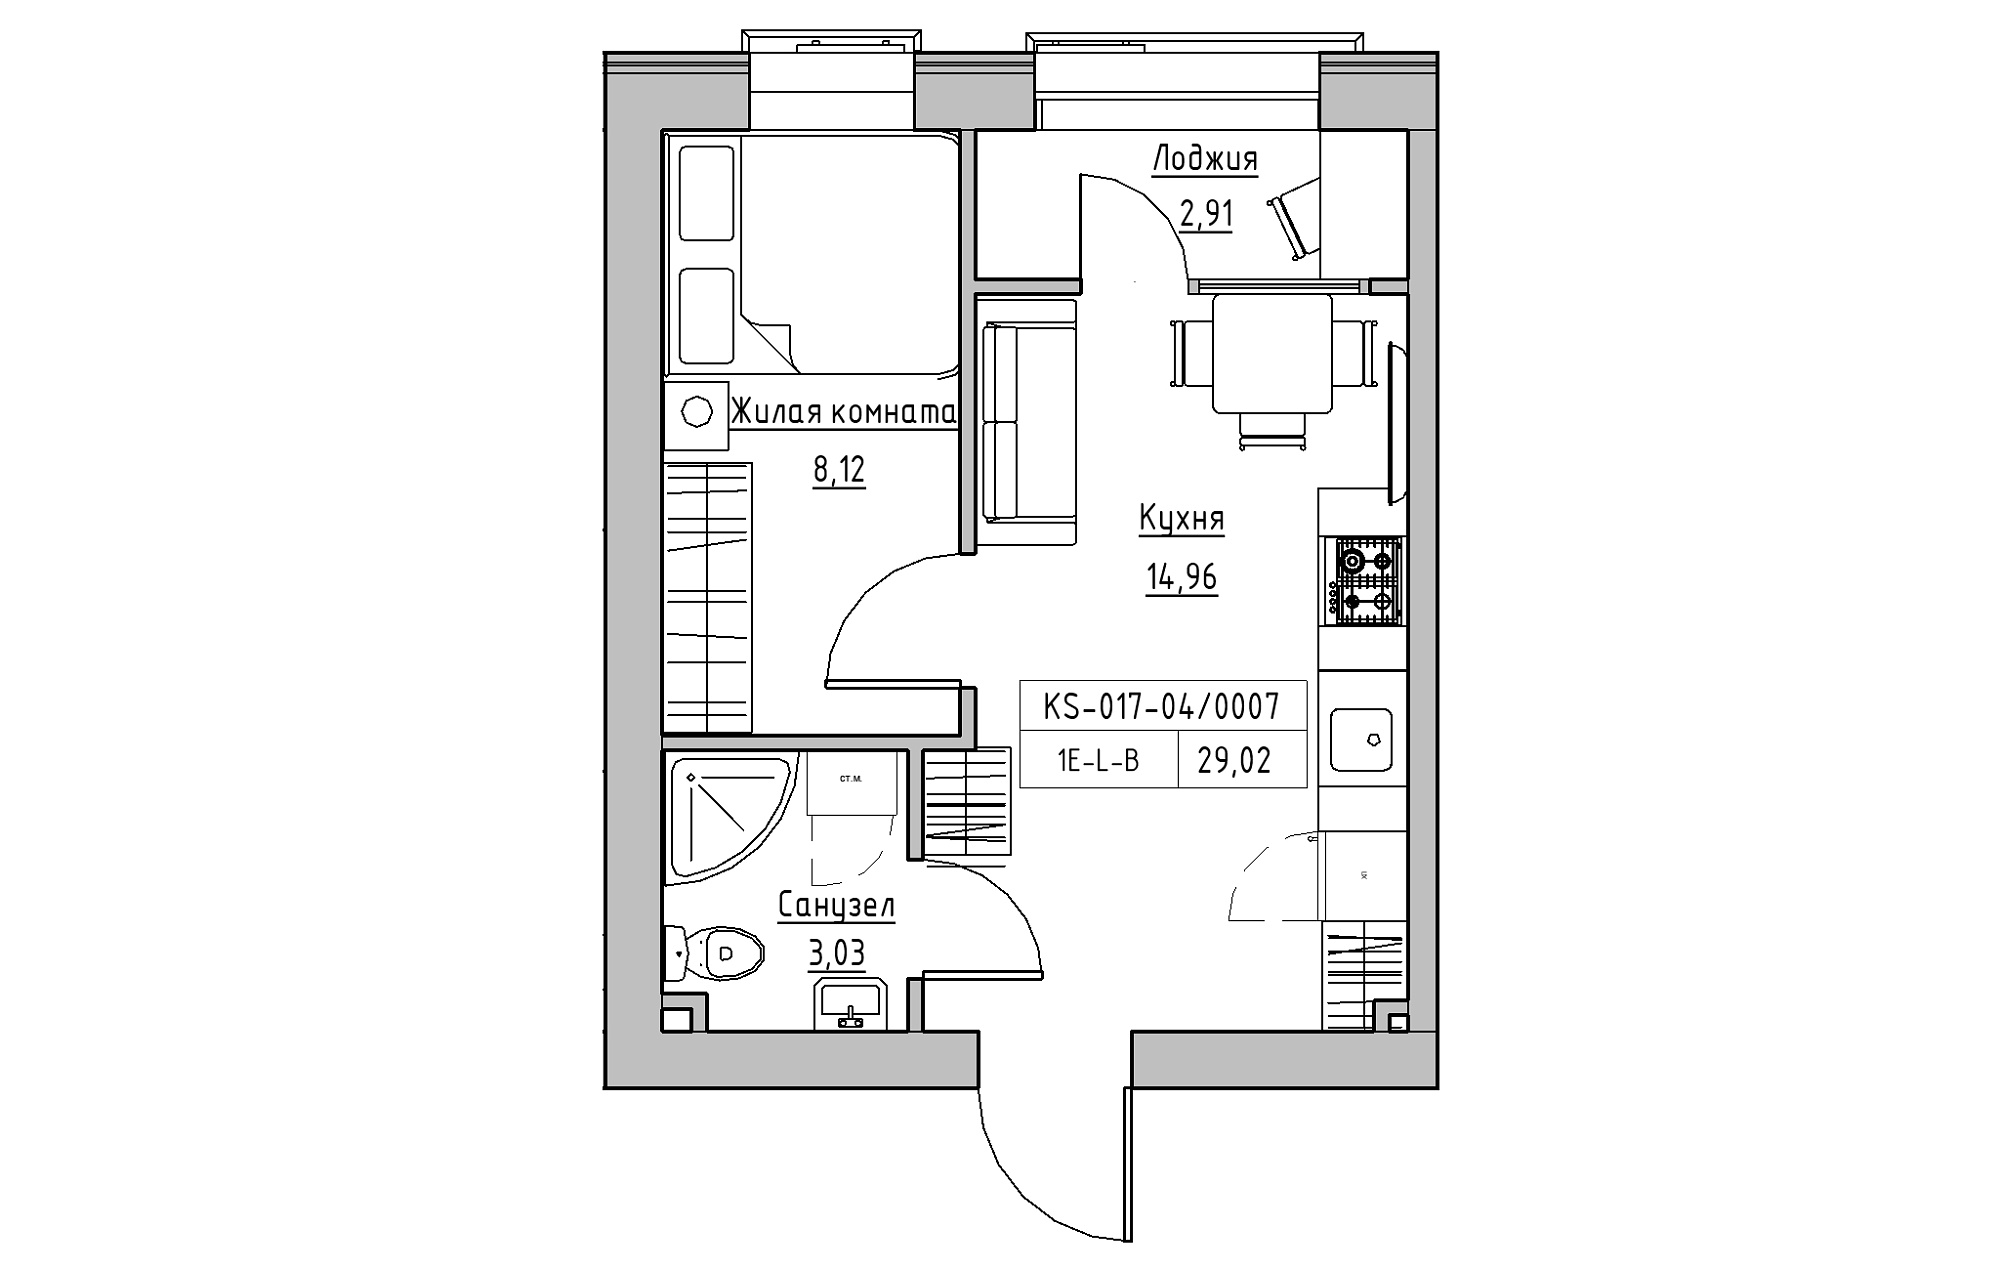 Планування 1-к квартира площею 29.02м2, KS-017-04/0007.